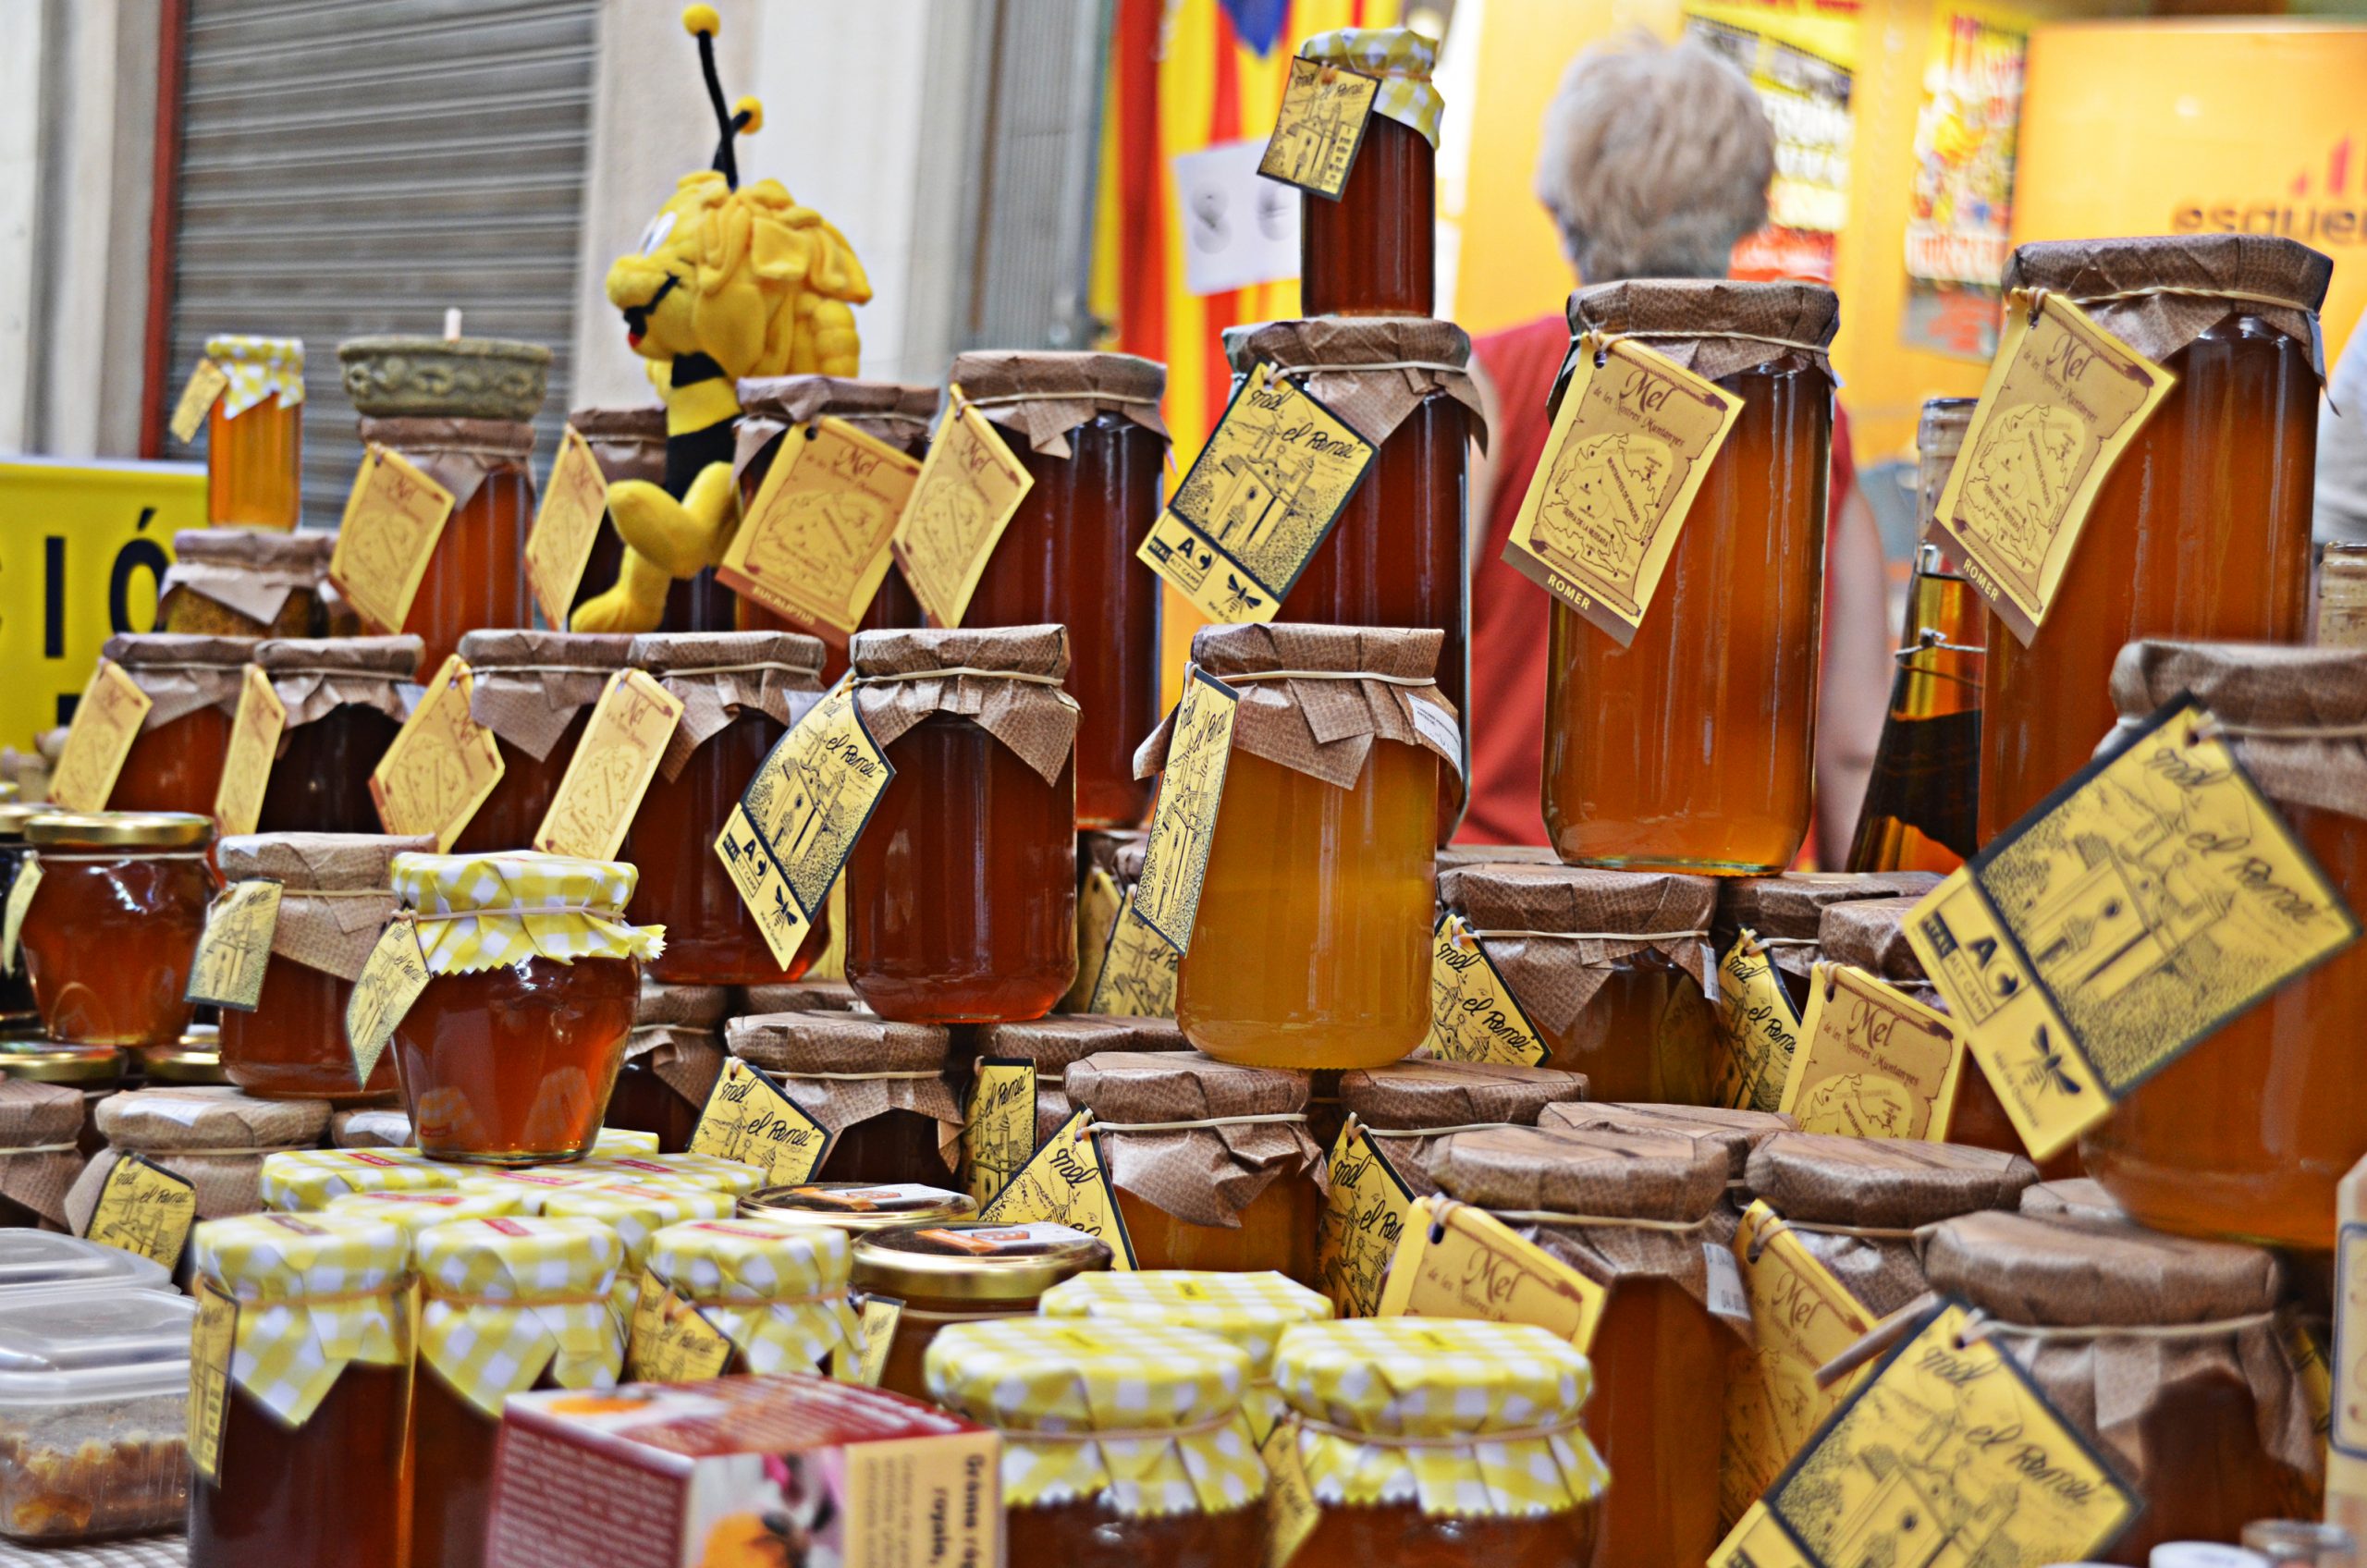 Miel natural directa de apicultores en Tarragona